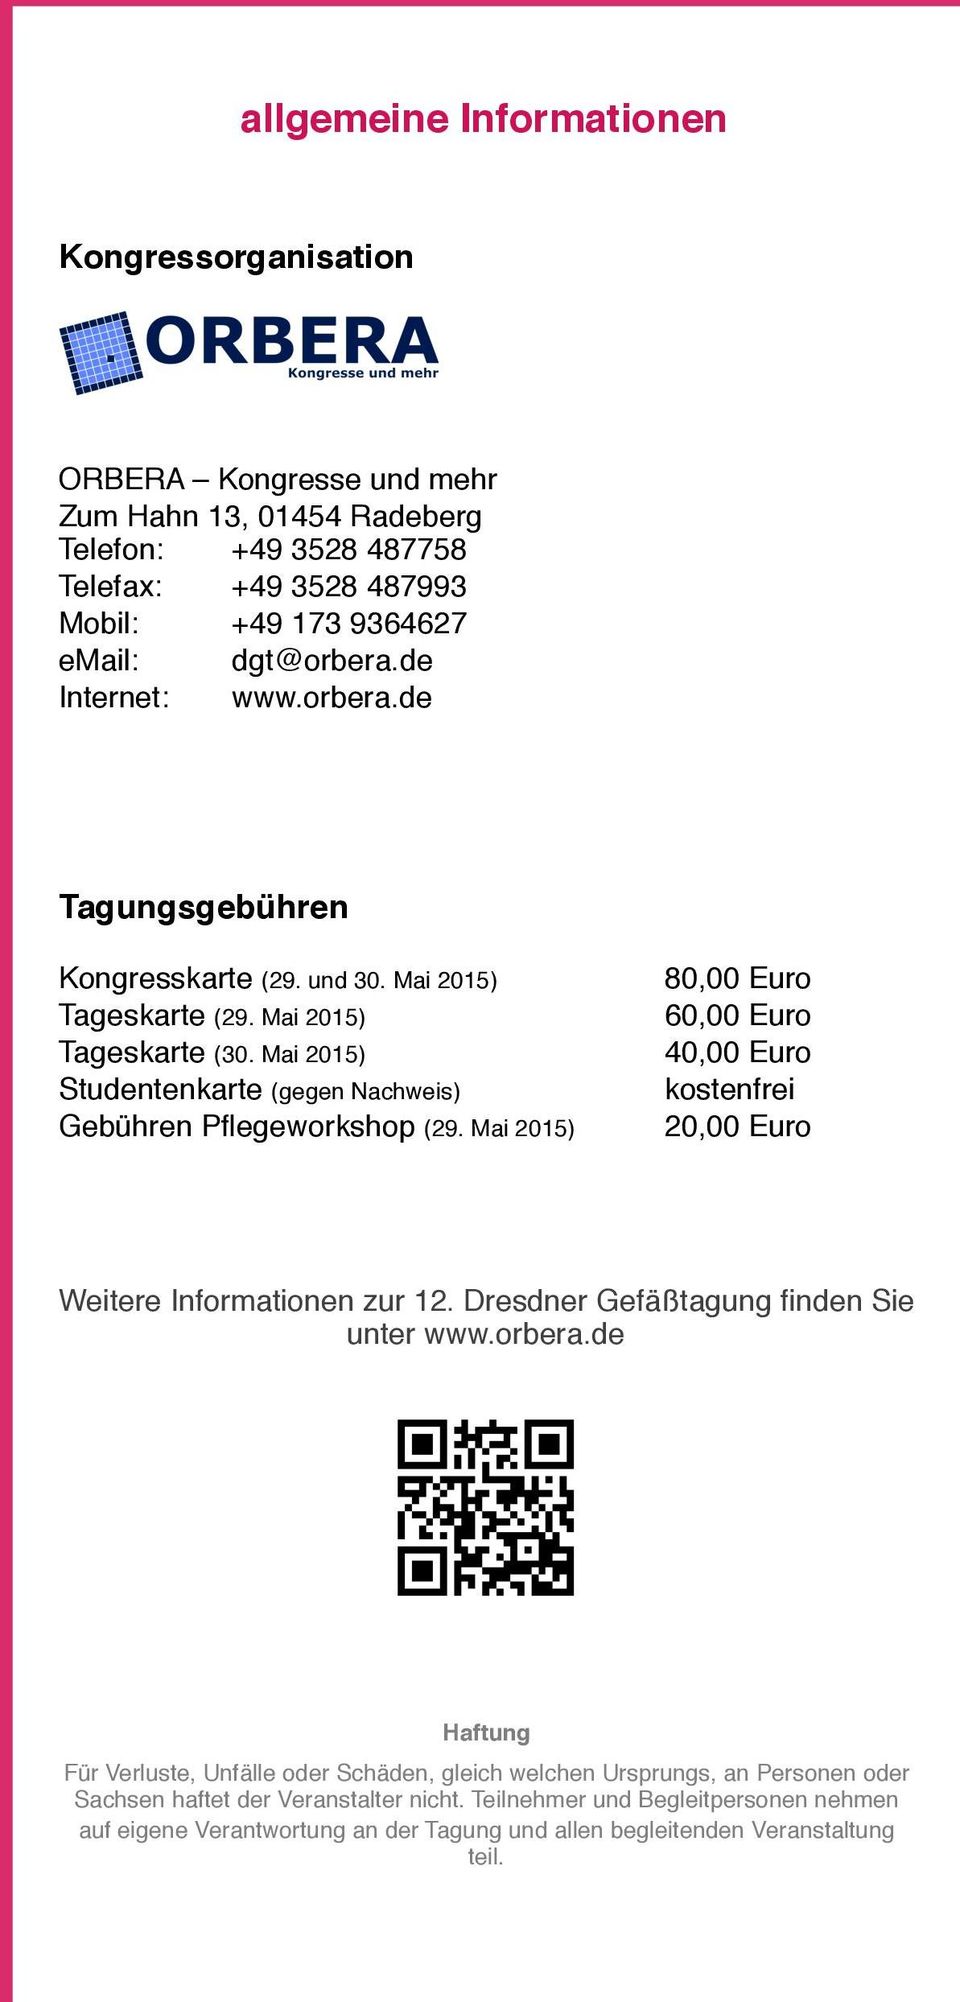 Mai 2015) 80,00 Euro 60,00 Euro 40,00 Euro kostenfrei 20,00 Euro Weitere Informationen zur 12. Dresdner Gefäßtagung finden Sie unter www.orbera.